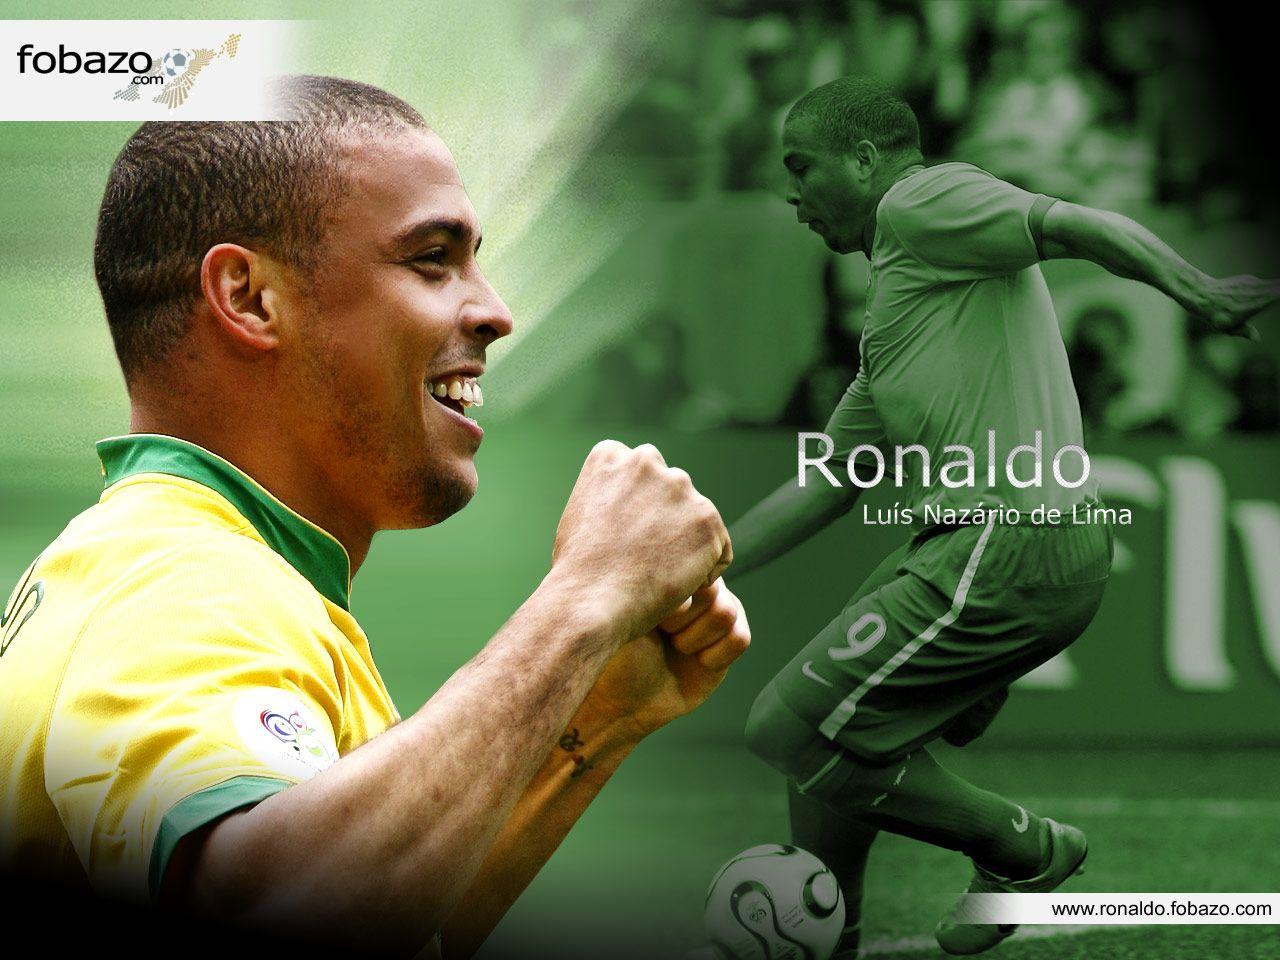 Nike Soccer: Before Ronaldo & After Ronaldo